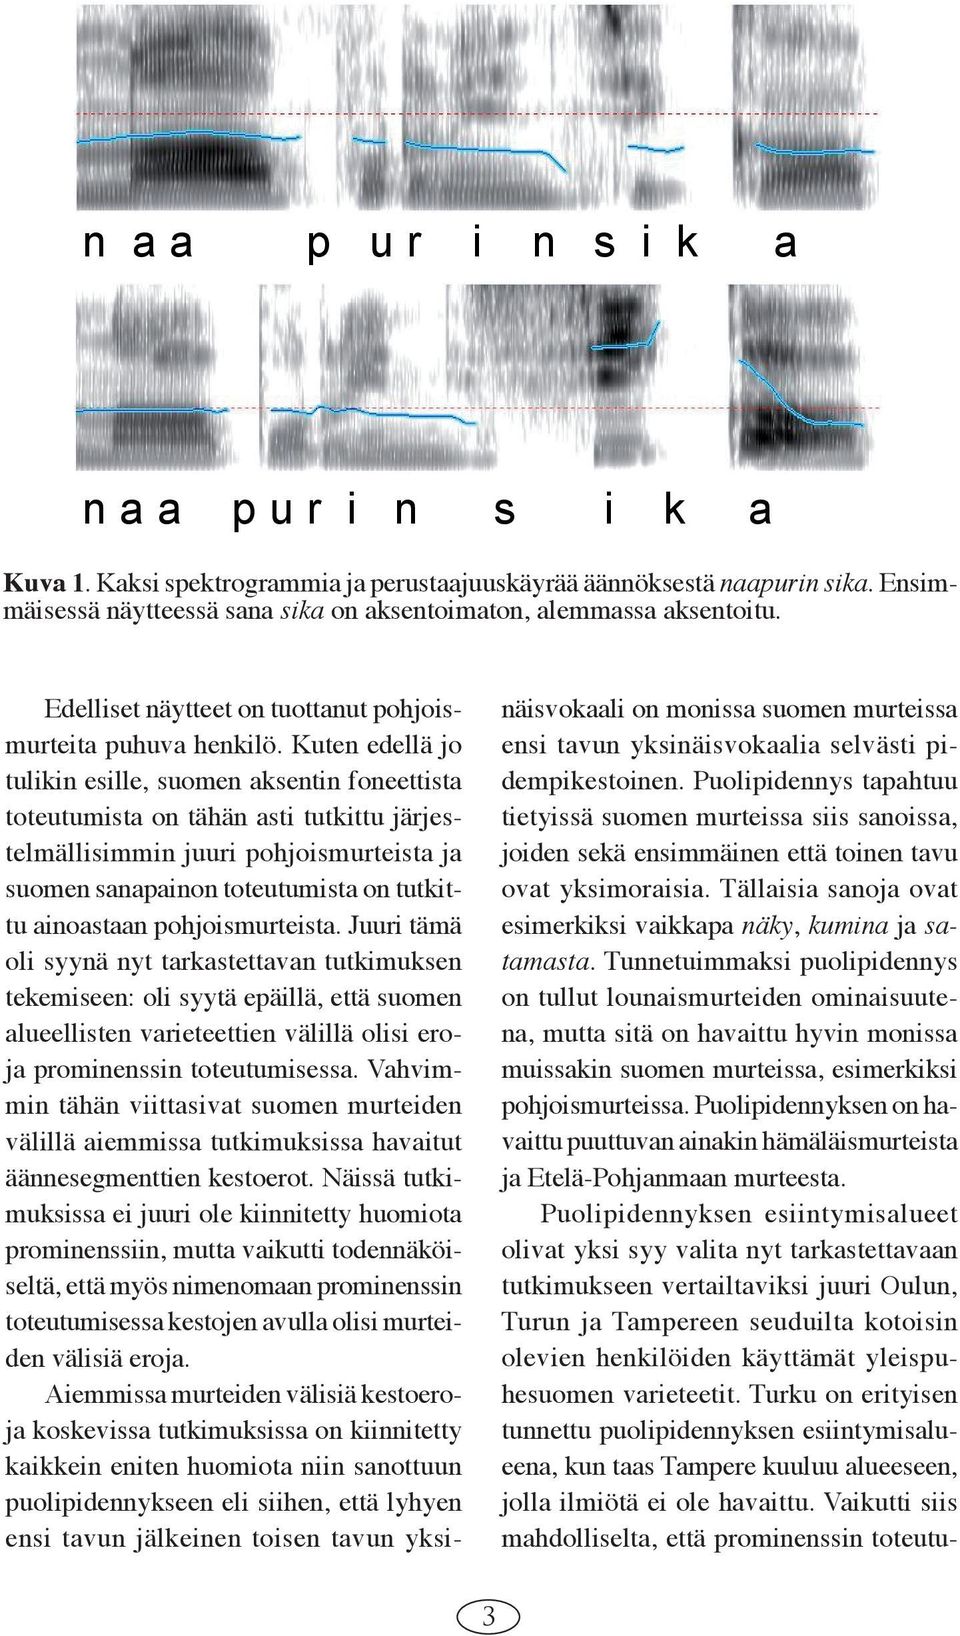 Kuten edellä jo tulikin esille, suomen aksentin foneettista toteutumista on tähän asti tutkittu järjestelmällisimmin juuri pohjoismurteista ja suomen sanapainon toteutumista on tutkittu ainoastaan